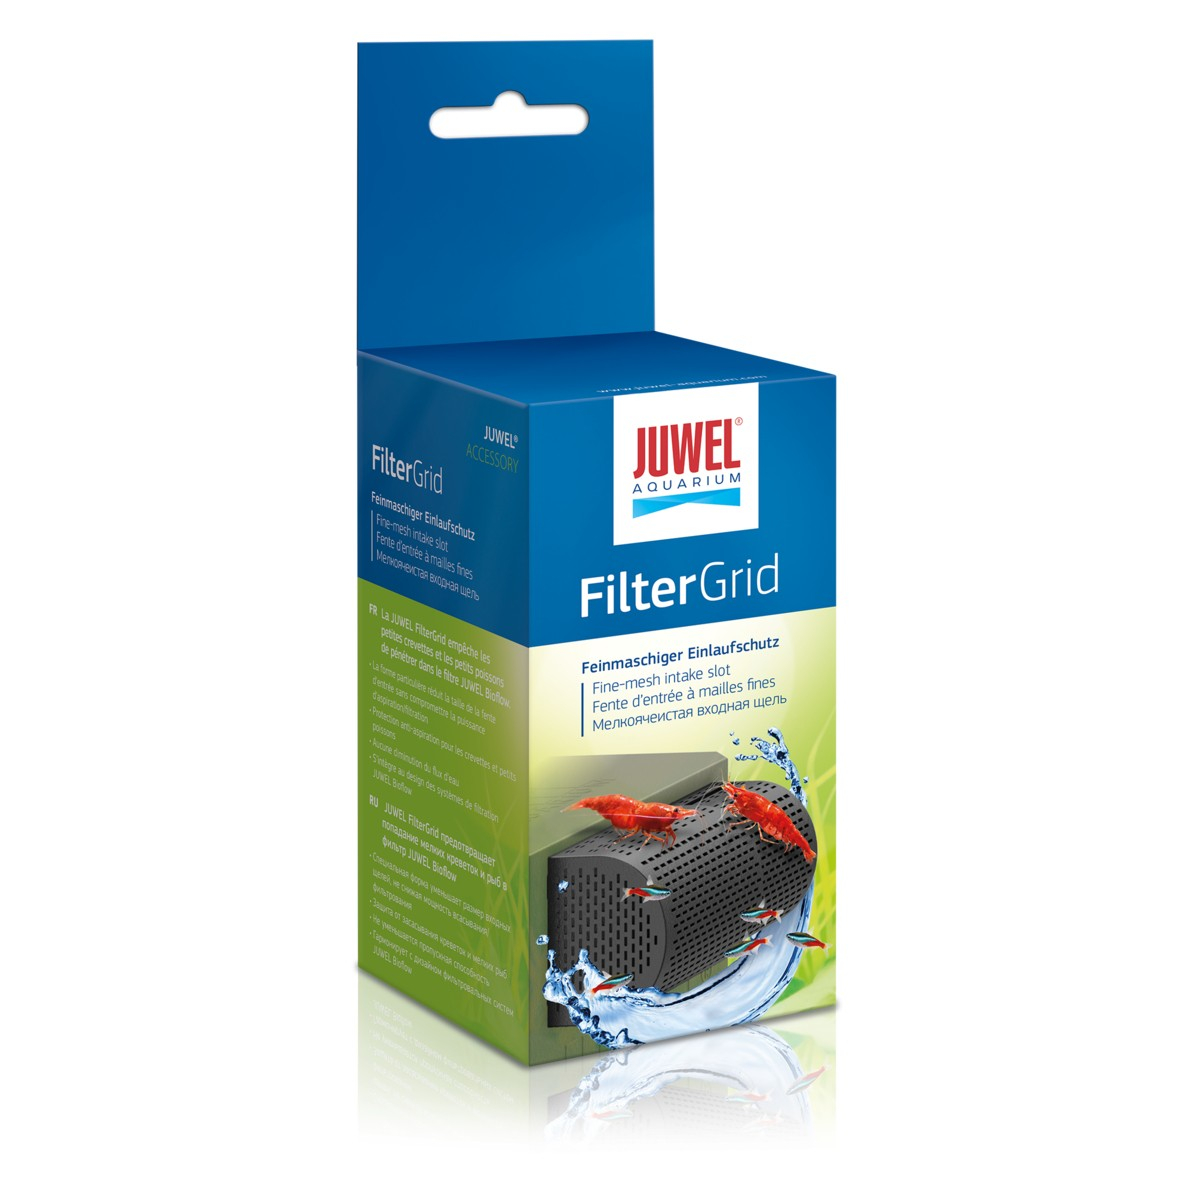 FilterGrid protección para invertevrados Juwel